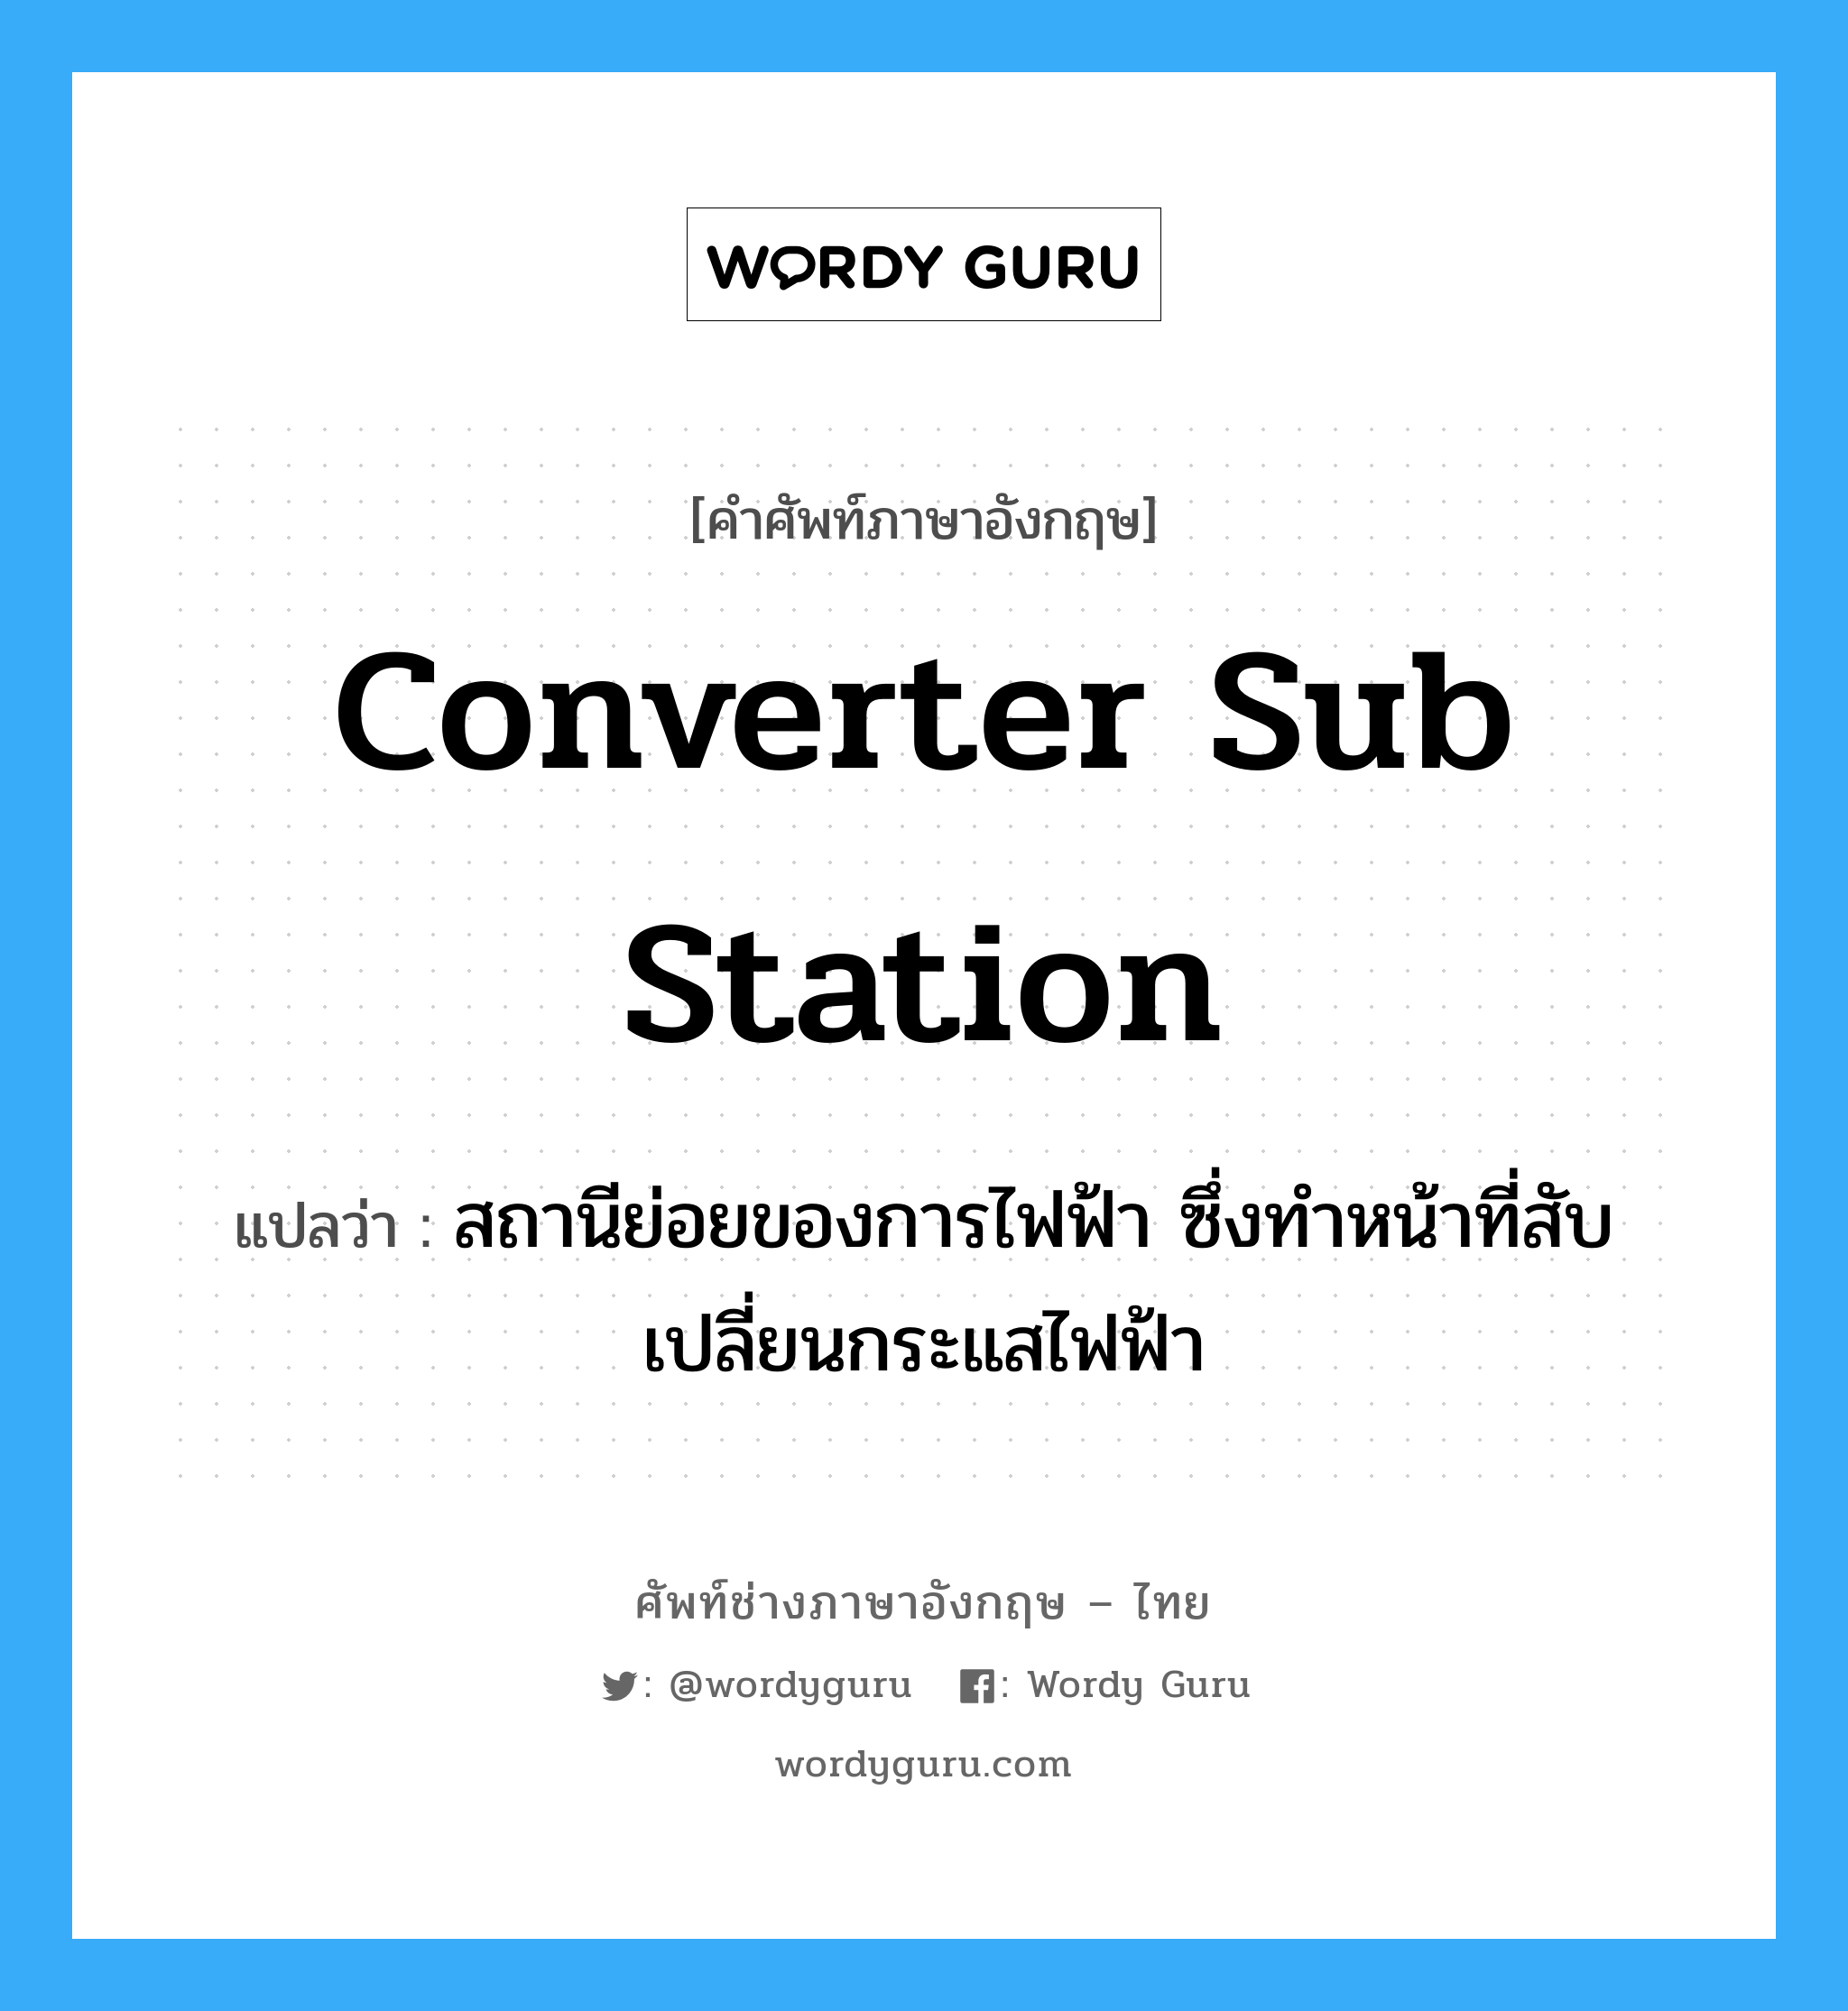 converter sub station แปลว่า?, คำศัพท์ช่างภาษาอังกฤษ - ไทย converter sub station คำศัพท์ภาษาอังกฤษ converter sub station แปลว่า สถานีย่อยของการไฟฟ้า ซึ่งทำหน้าที่สับเปลี่ยนกระแสไฟฟ้า